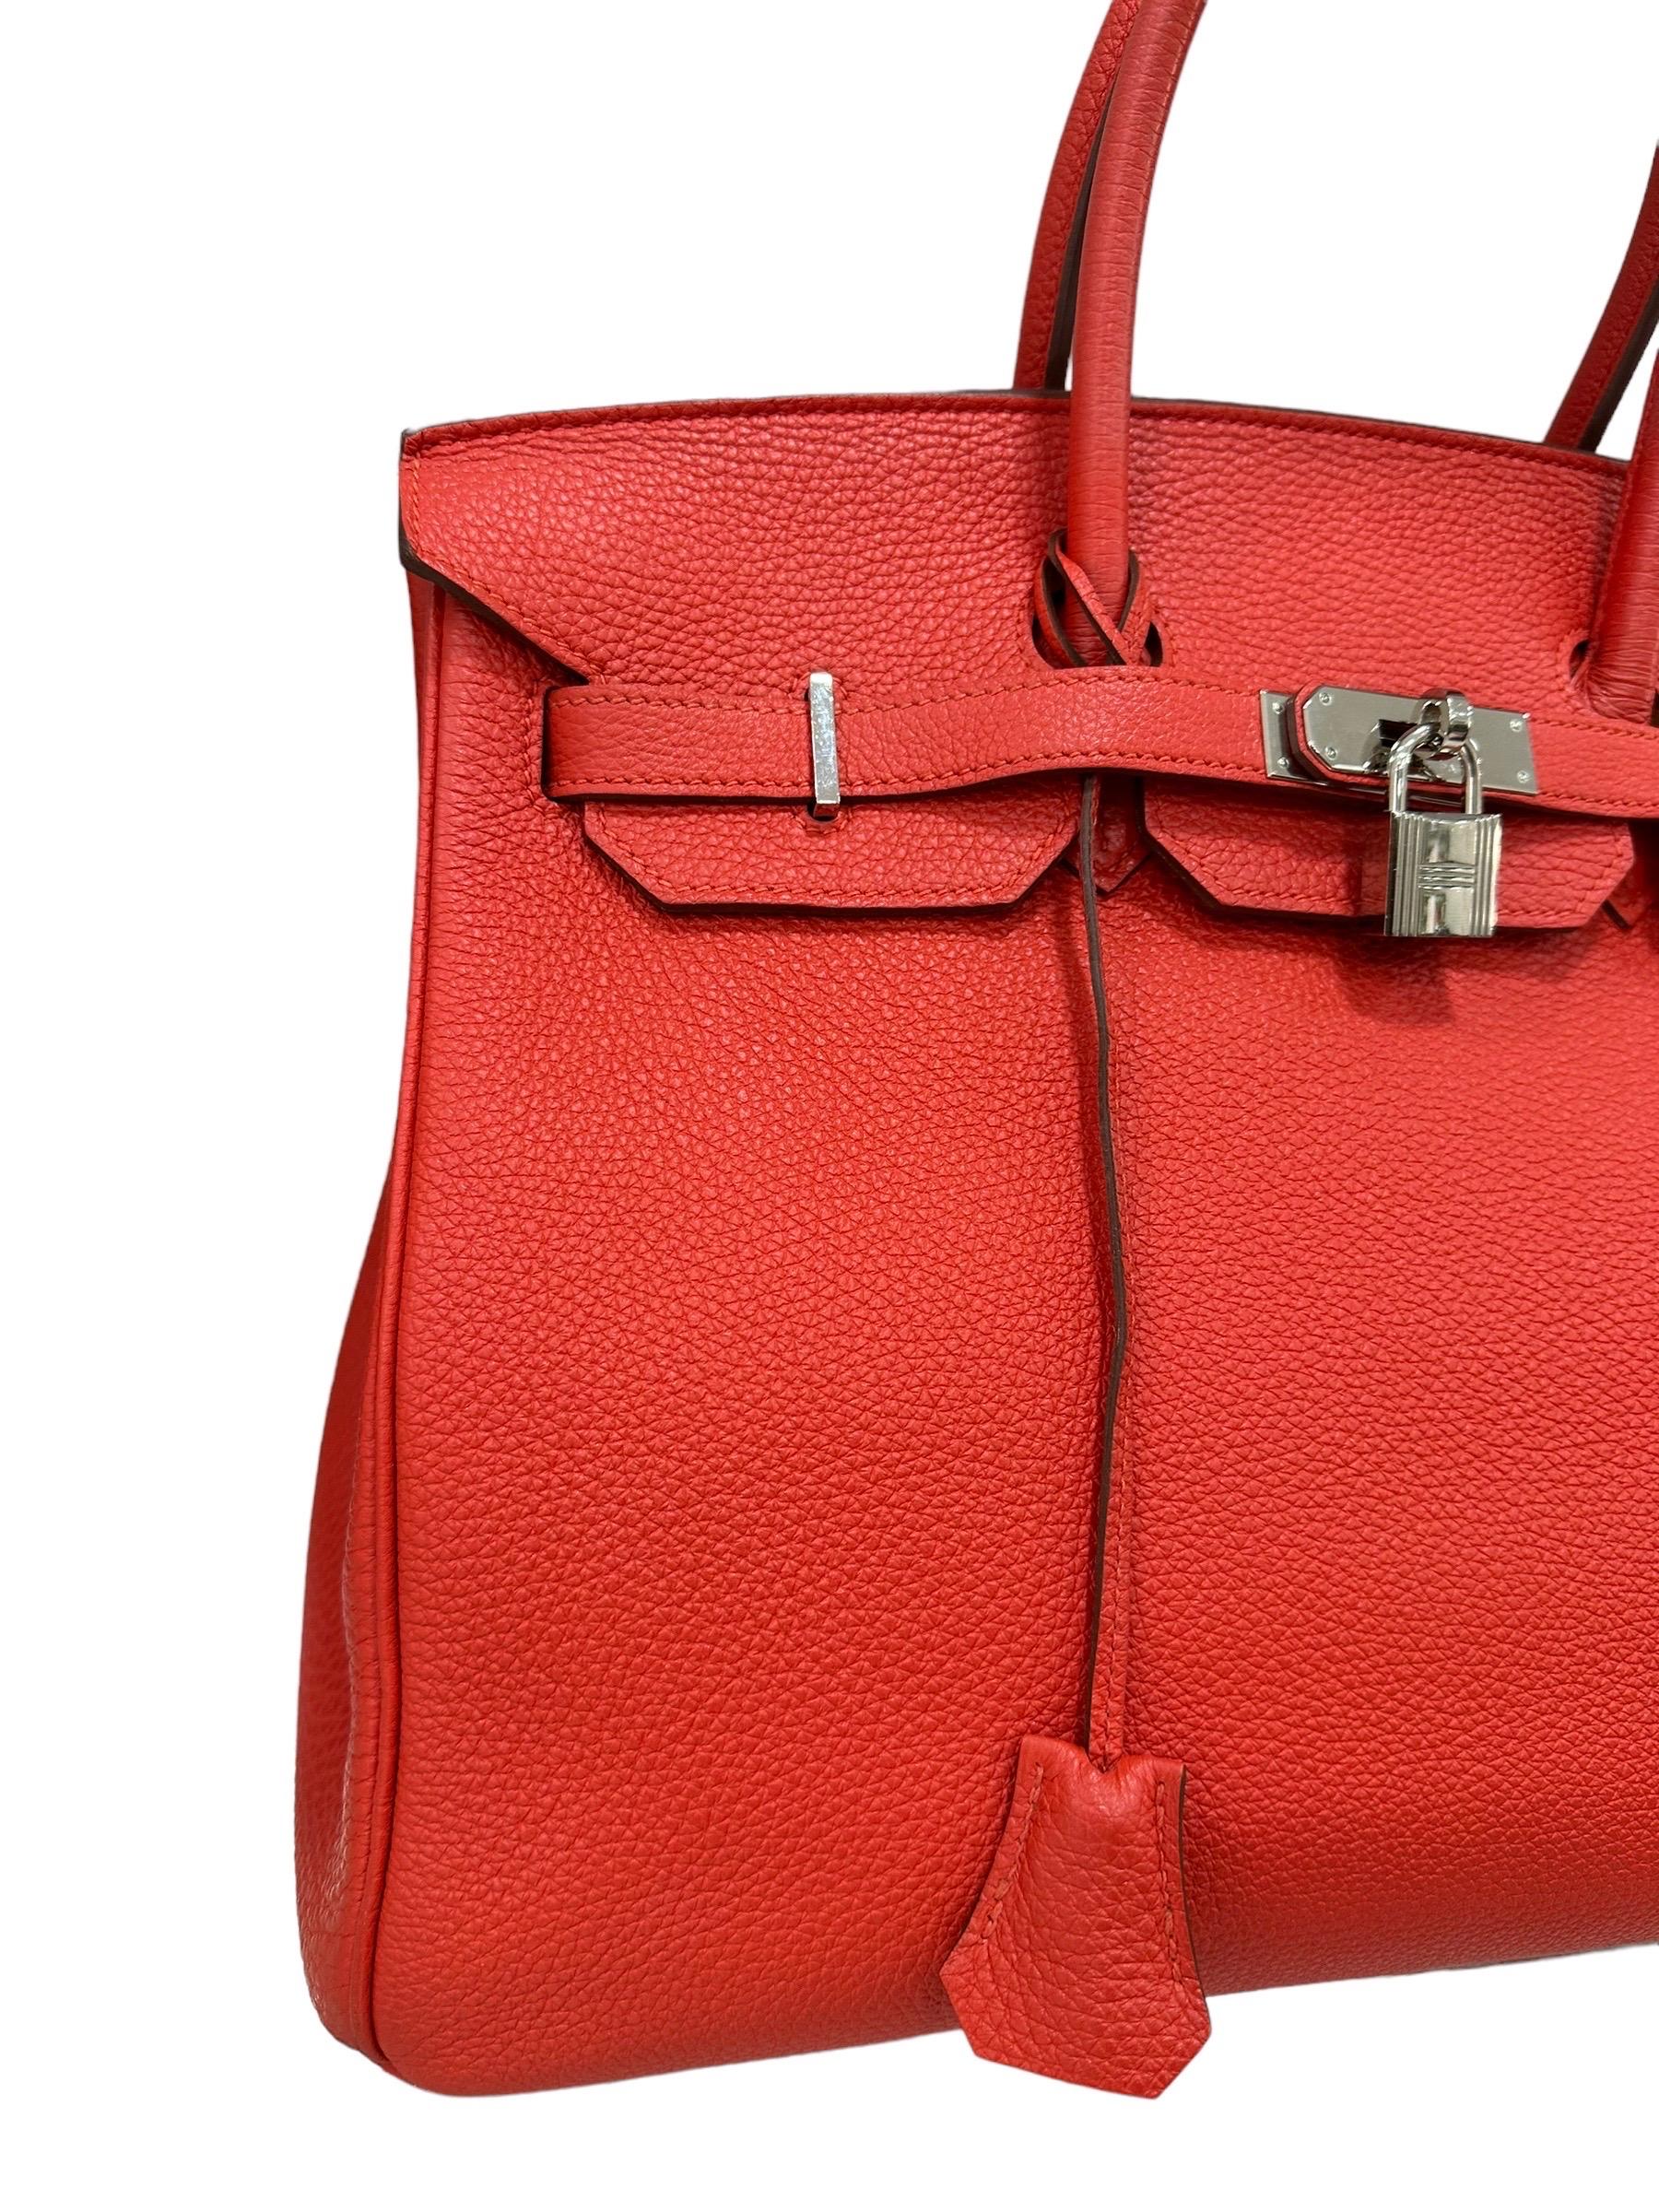 2011 Hermès Birkin 35 Togo Leather Rouge Capucine Top Handle Bag Pour femmes en vente